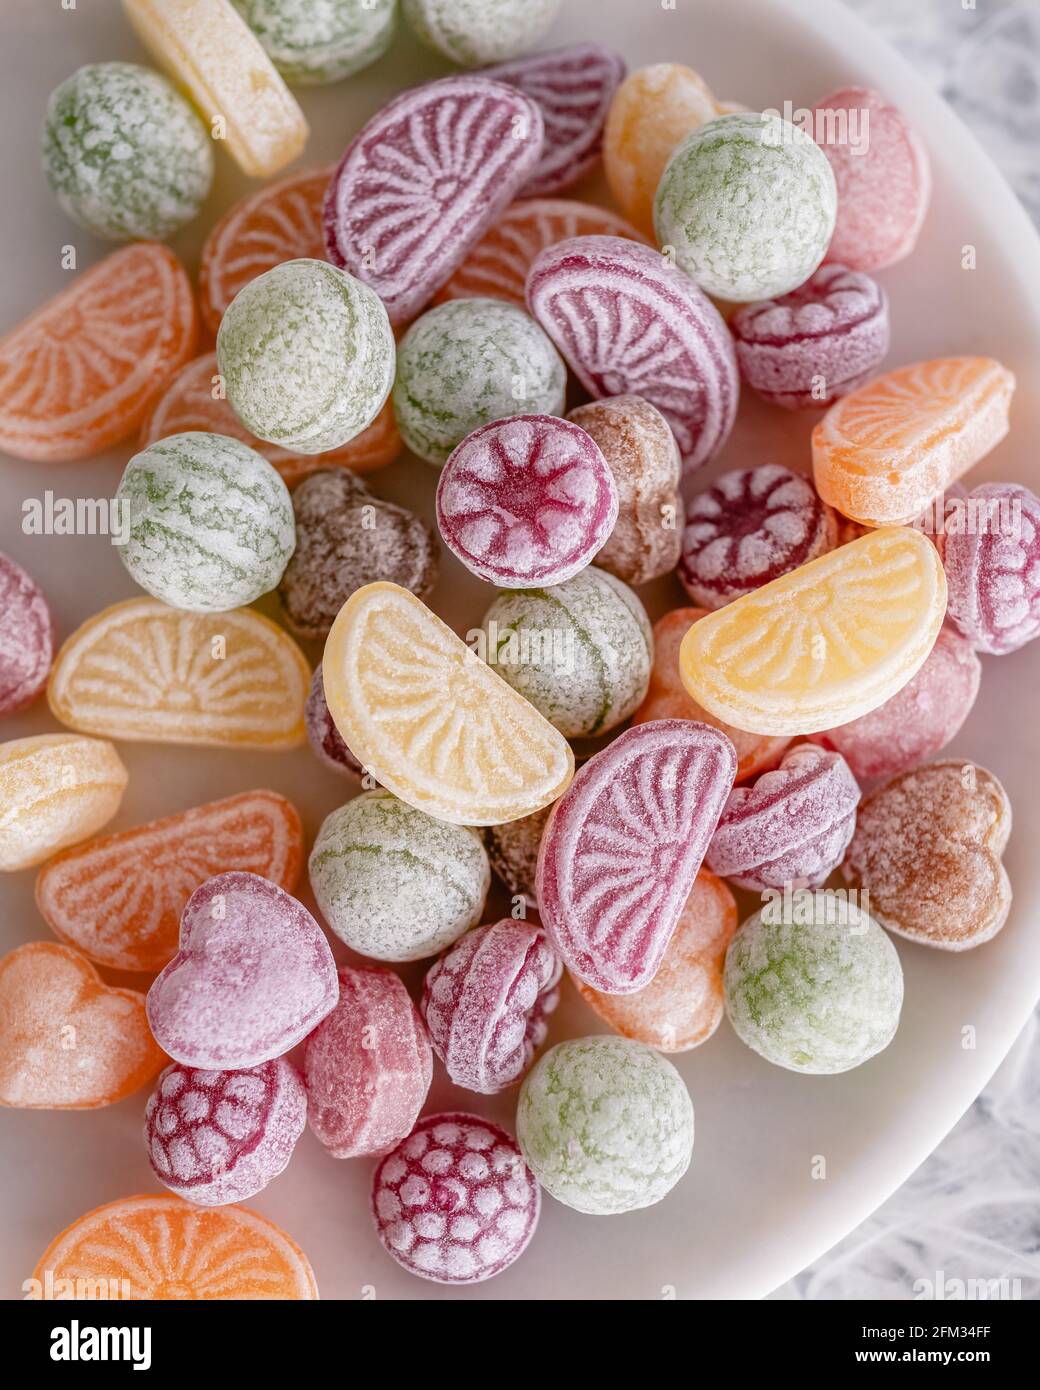 Nahaufnahme von verschiedenen Bonbons auf einem Teller Stockfoto